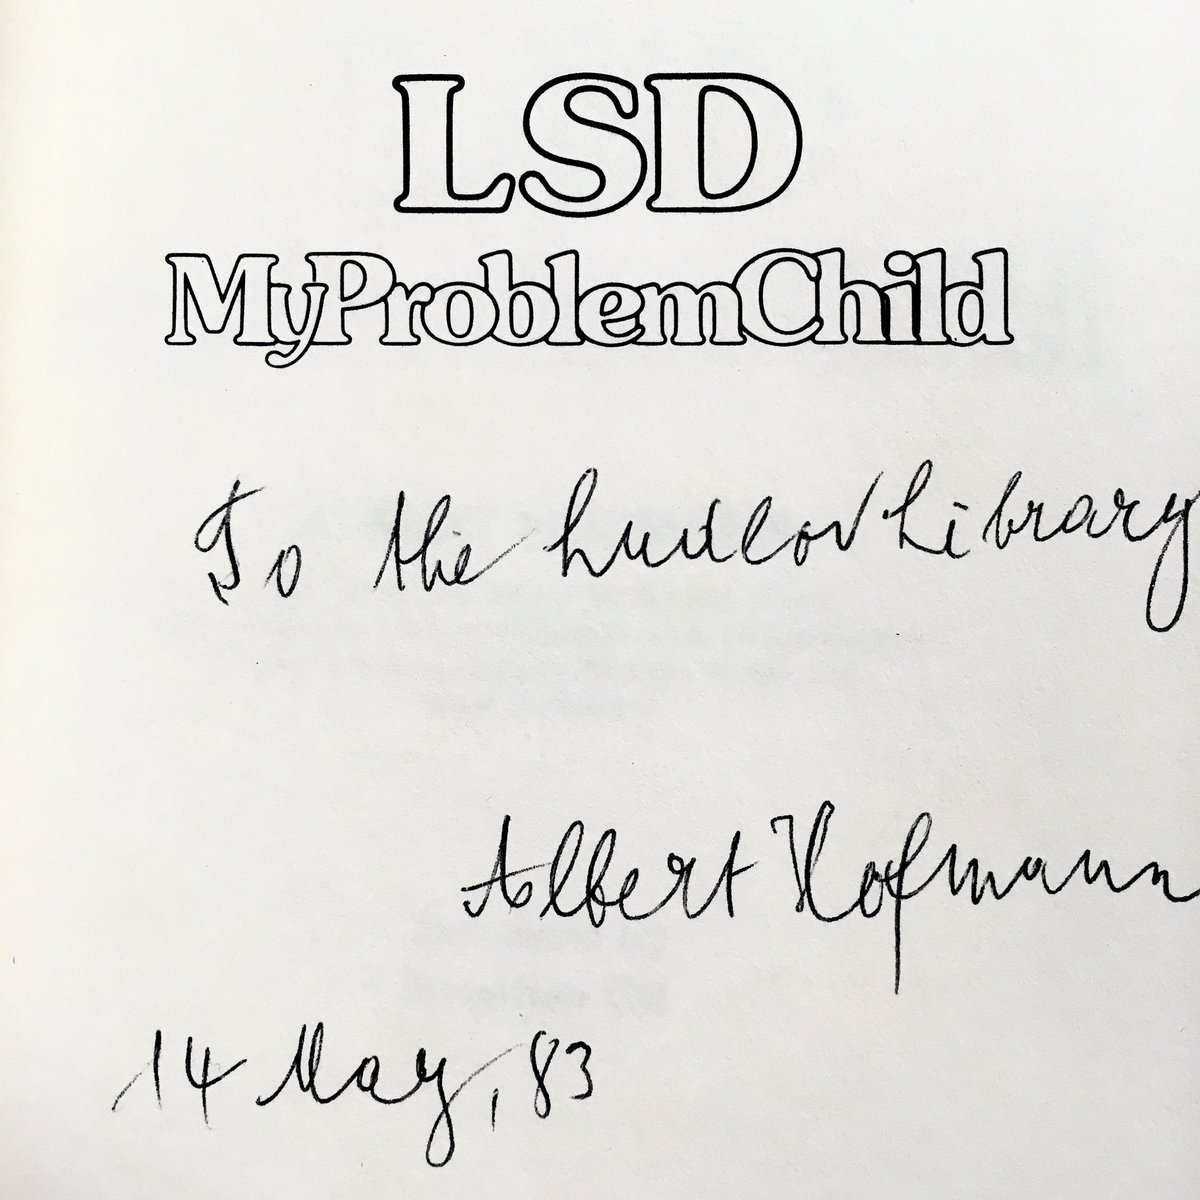 Albert Hofmann, synthesizer of LSD